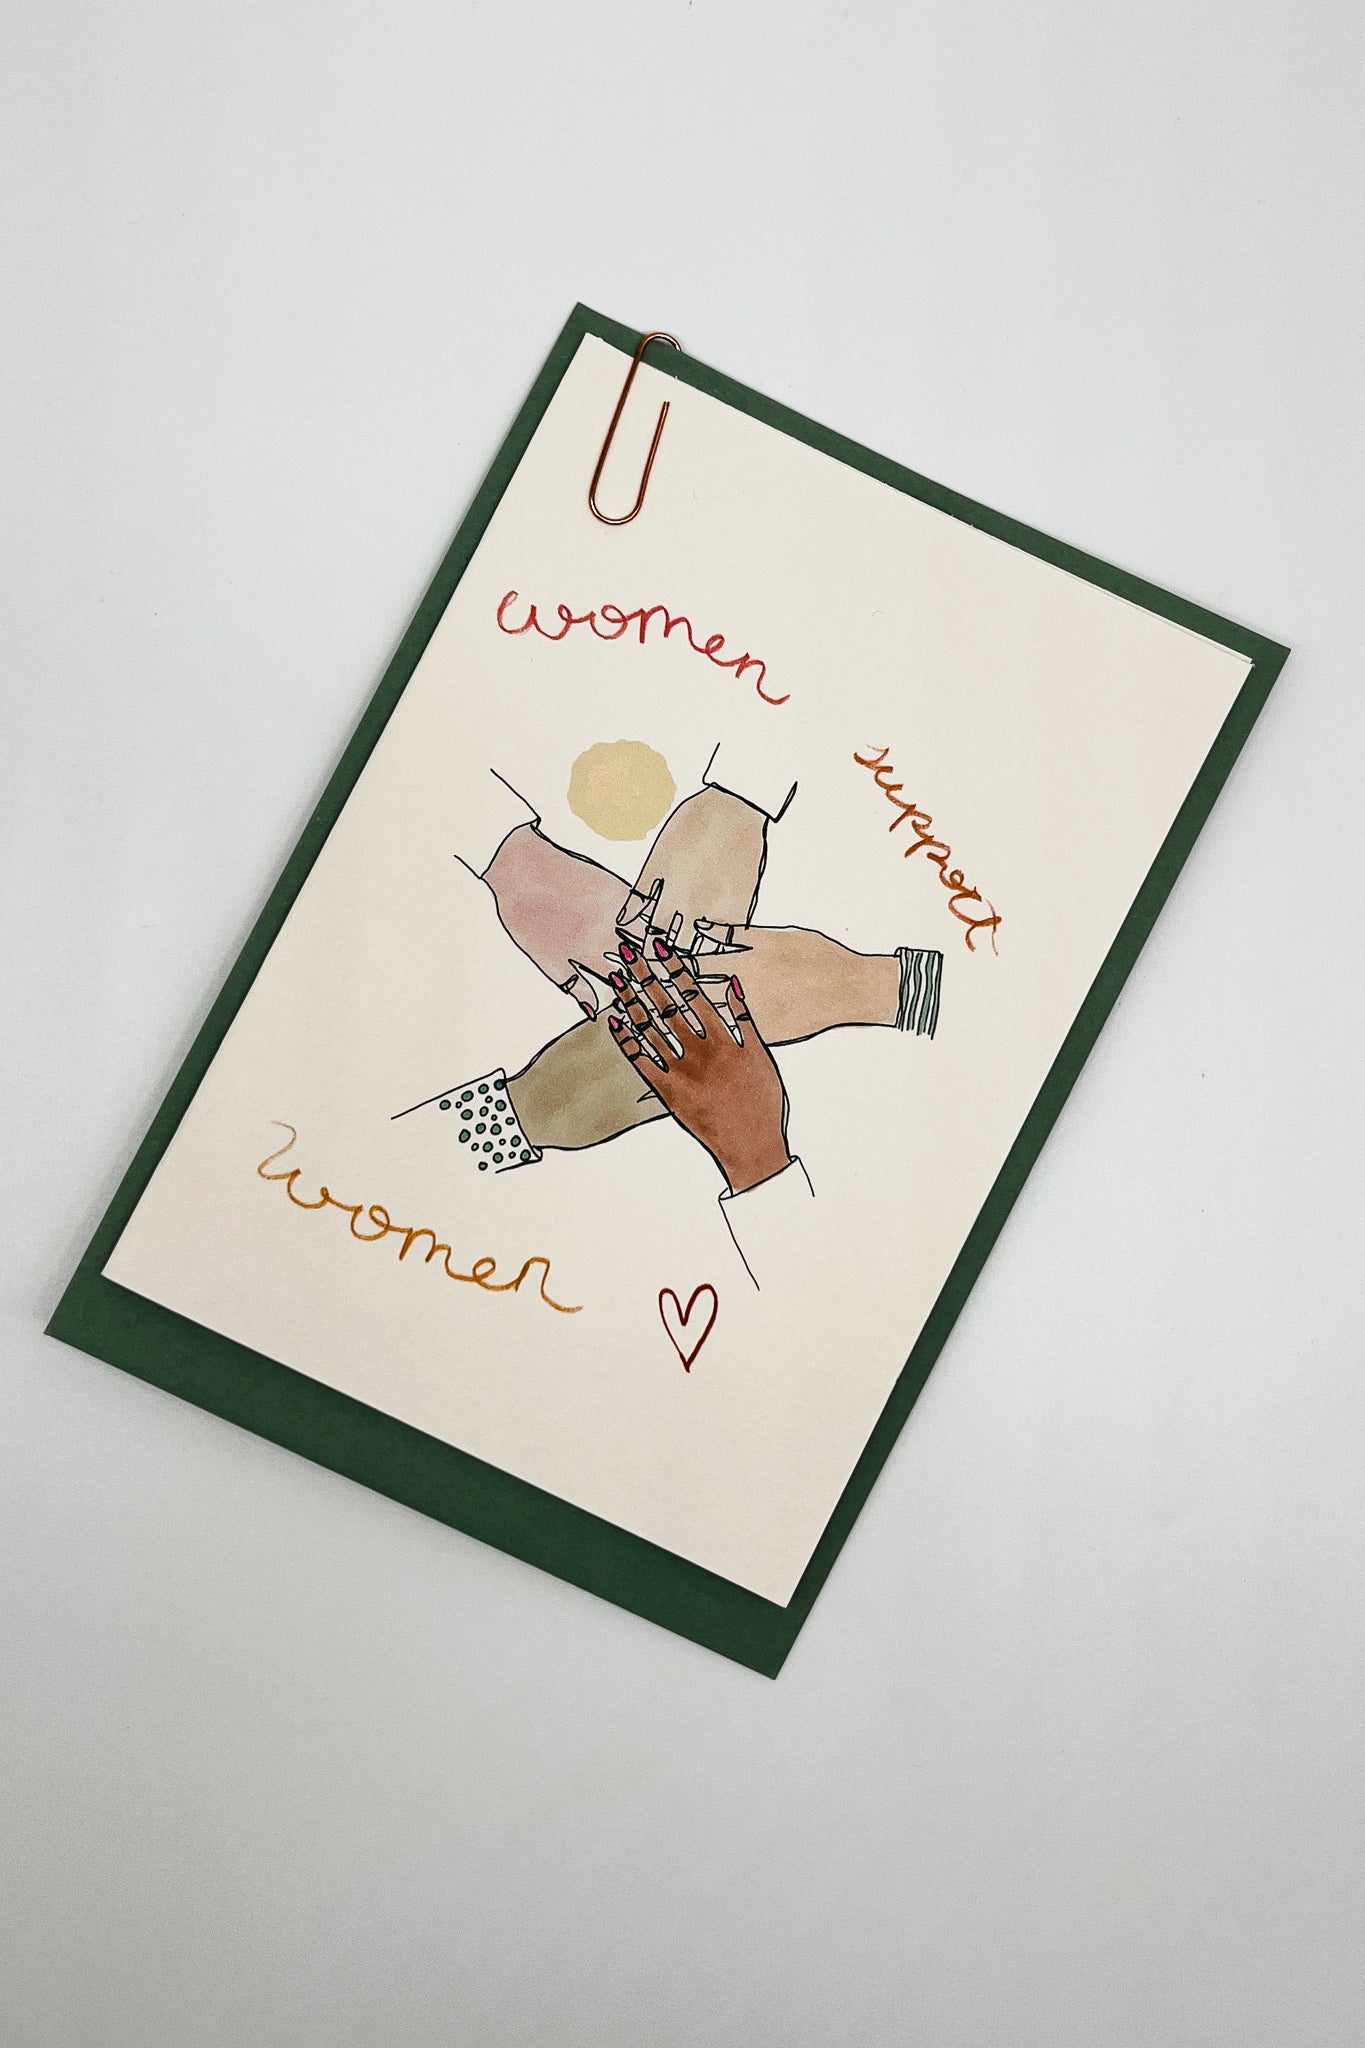 Women support women | Postcard